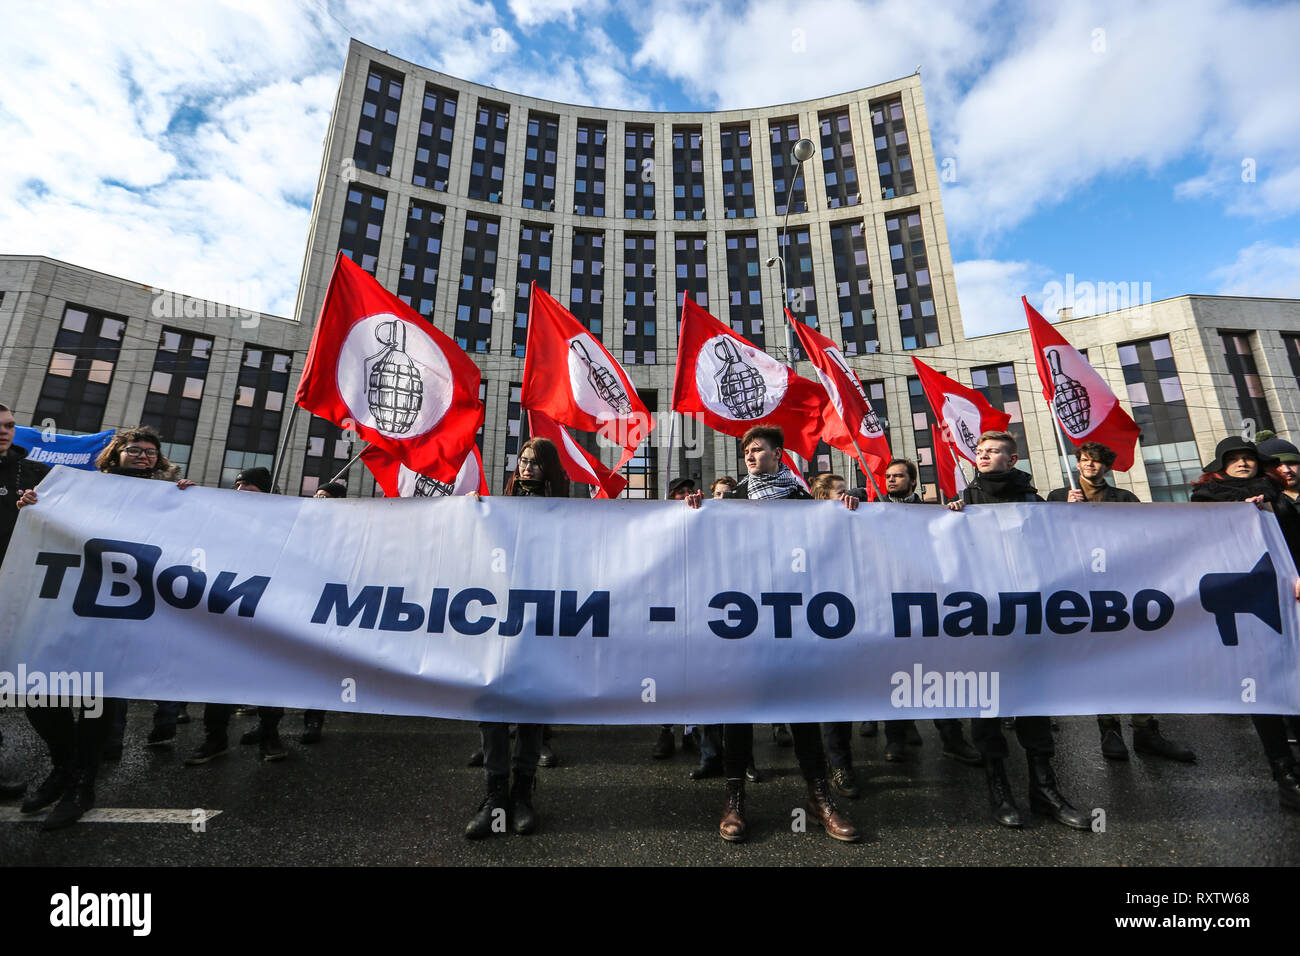 Les participants sont considérés tenant une bannière et de drapeaux pendant la manifestation. Les participants à un rassemblement de l'opposition dans le centre de Moscou et de protester contre le contrôle de l'état sur l'internet en Russie. Banque D'Images